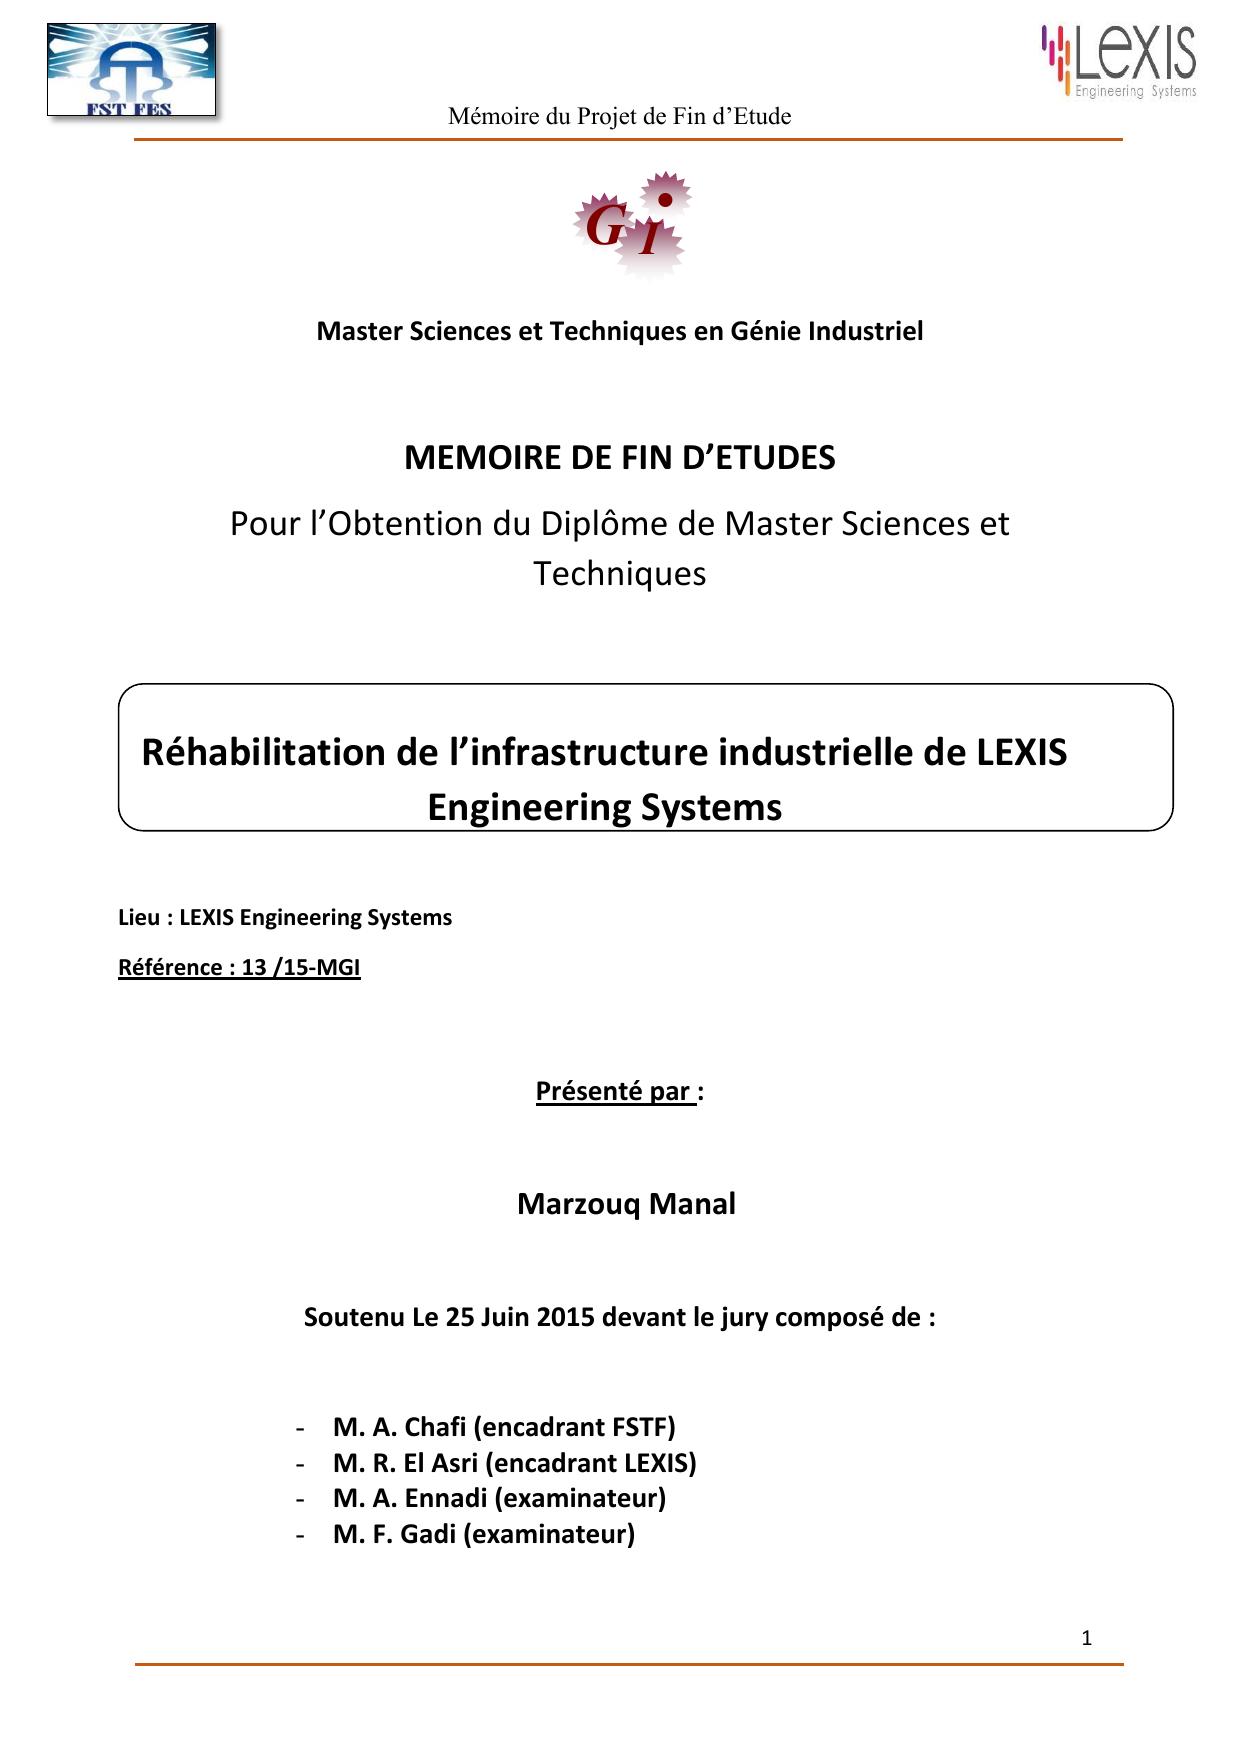 Réhabilitation de l’infrastructure industrielle de LEXIS Engineering Systems